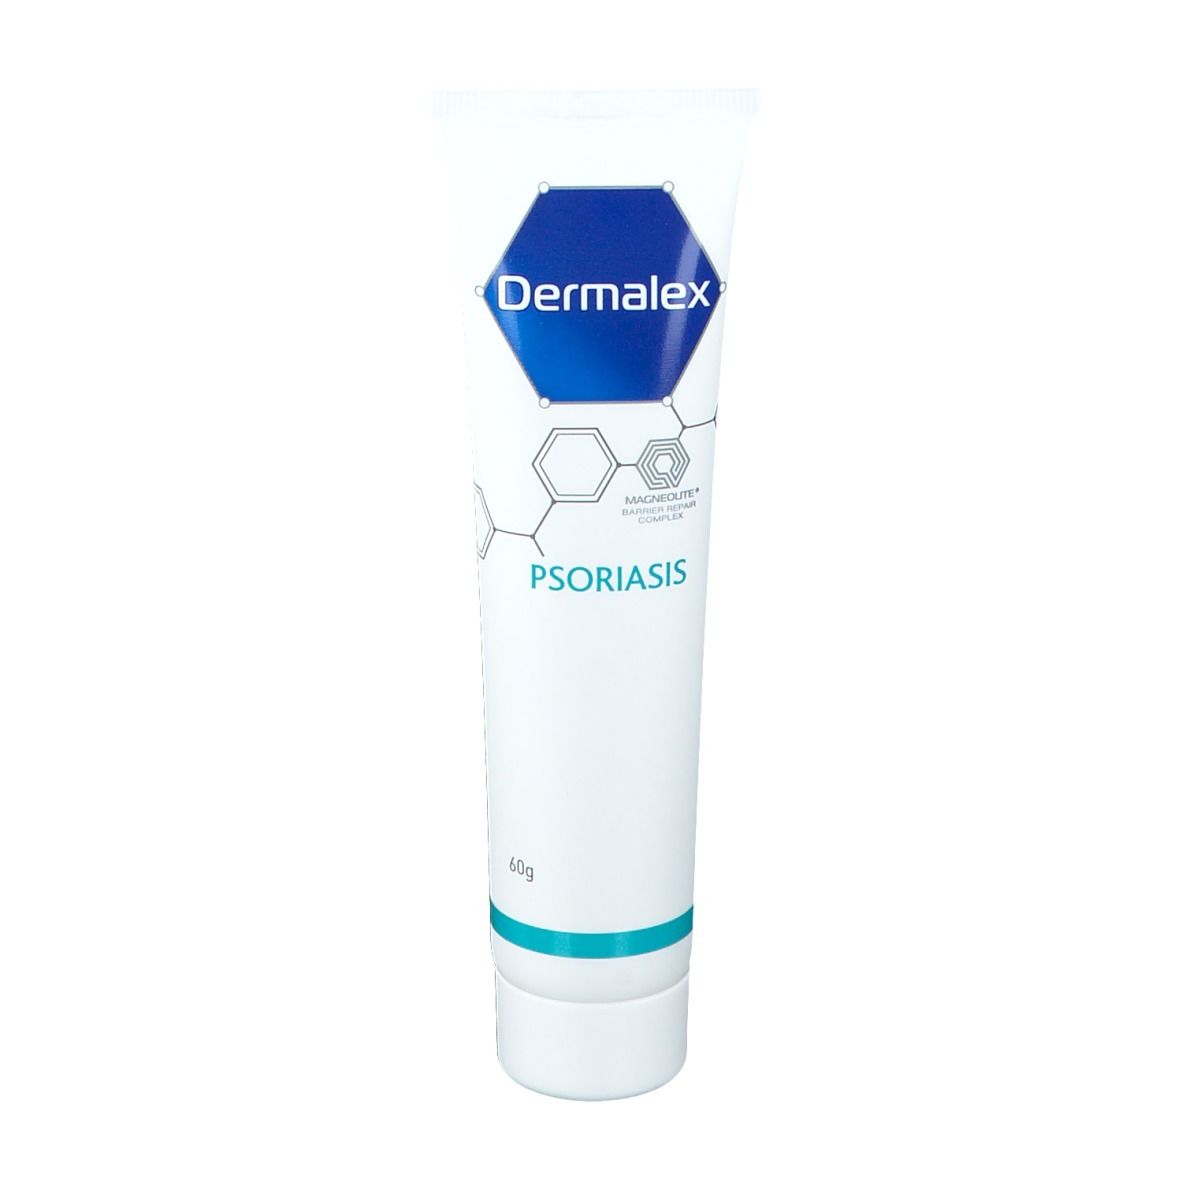 Dermalex Psoriasis Dermatologische Behandlung